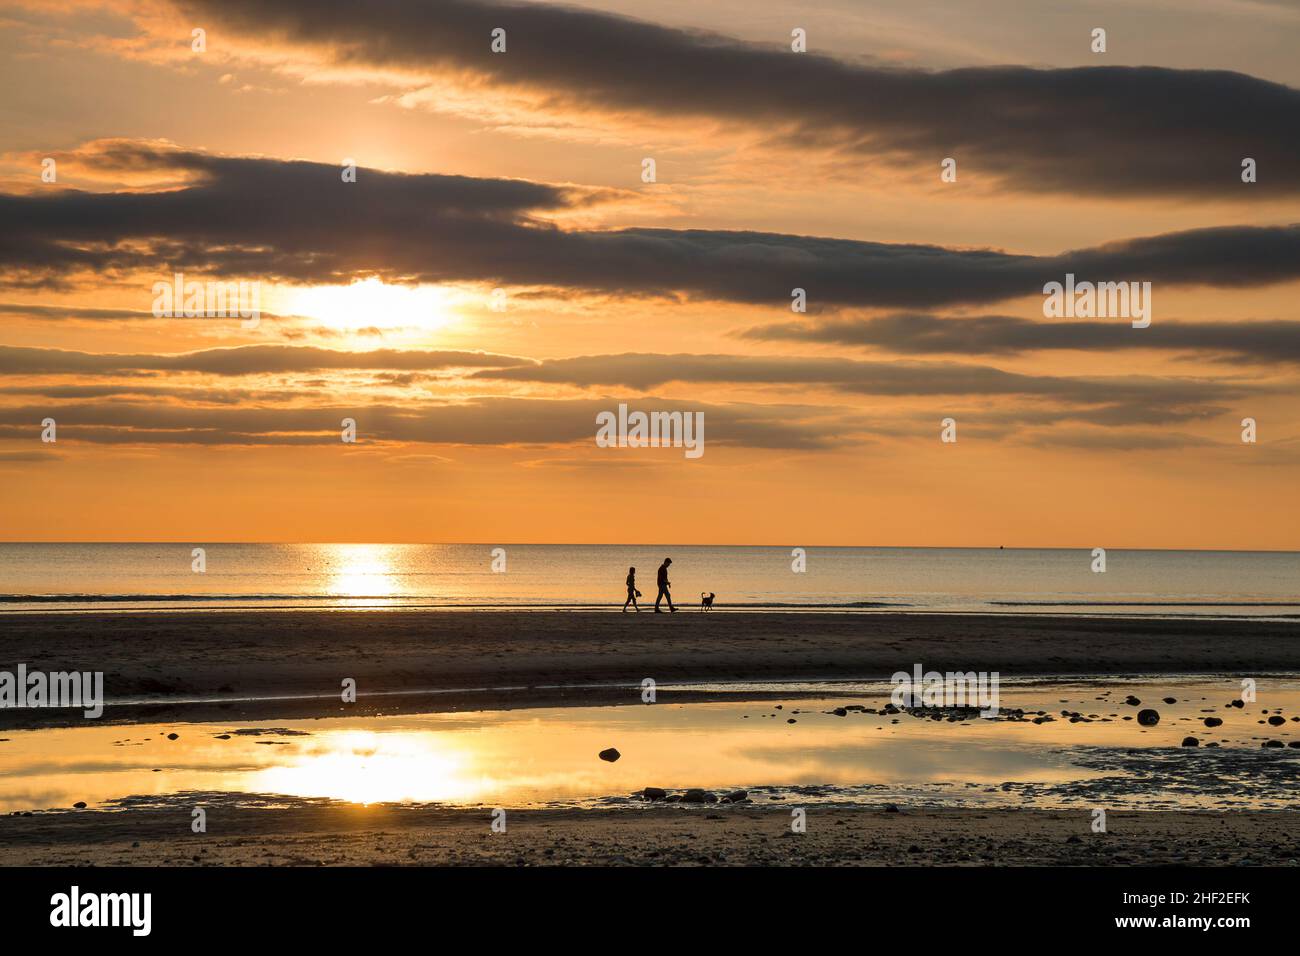 Royaume-Uni coucher de soleil paysage de plage avec jeune couple et chien silhouetted au loin, la marche sur le rivage de sable. Banque D'Images